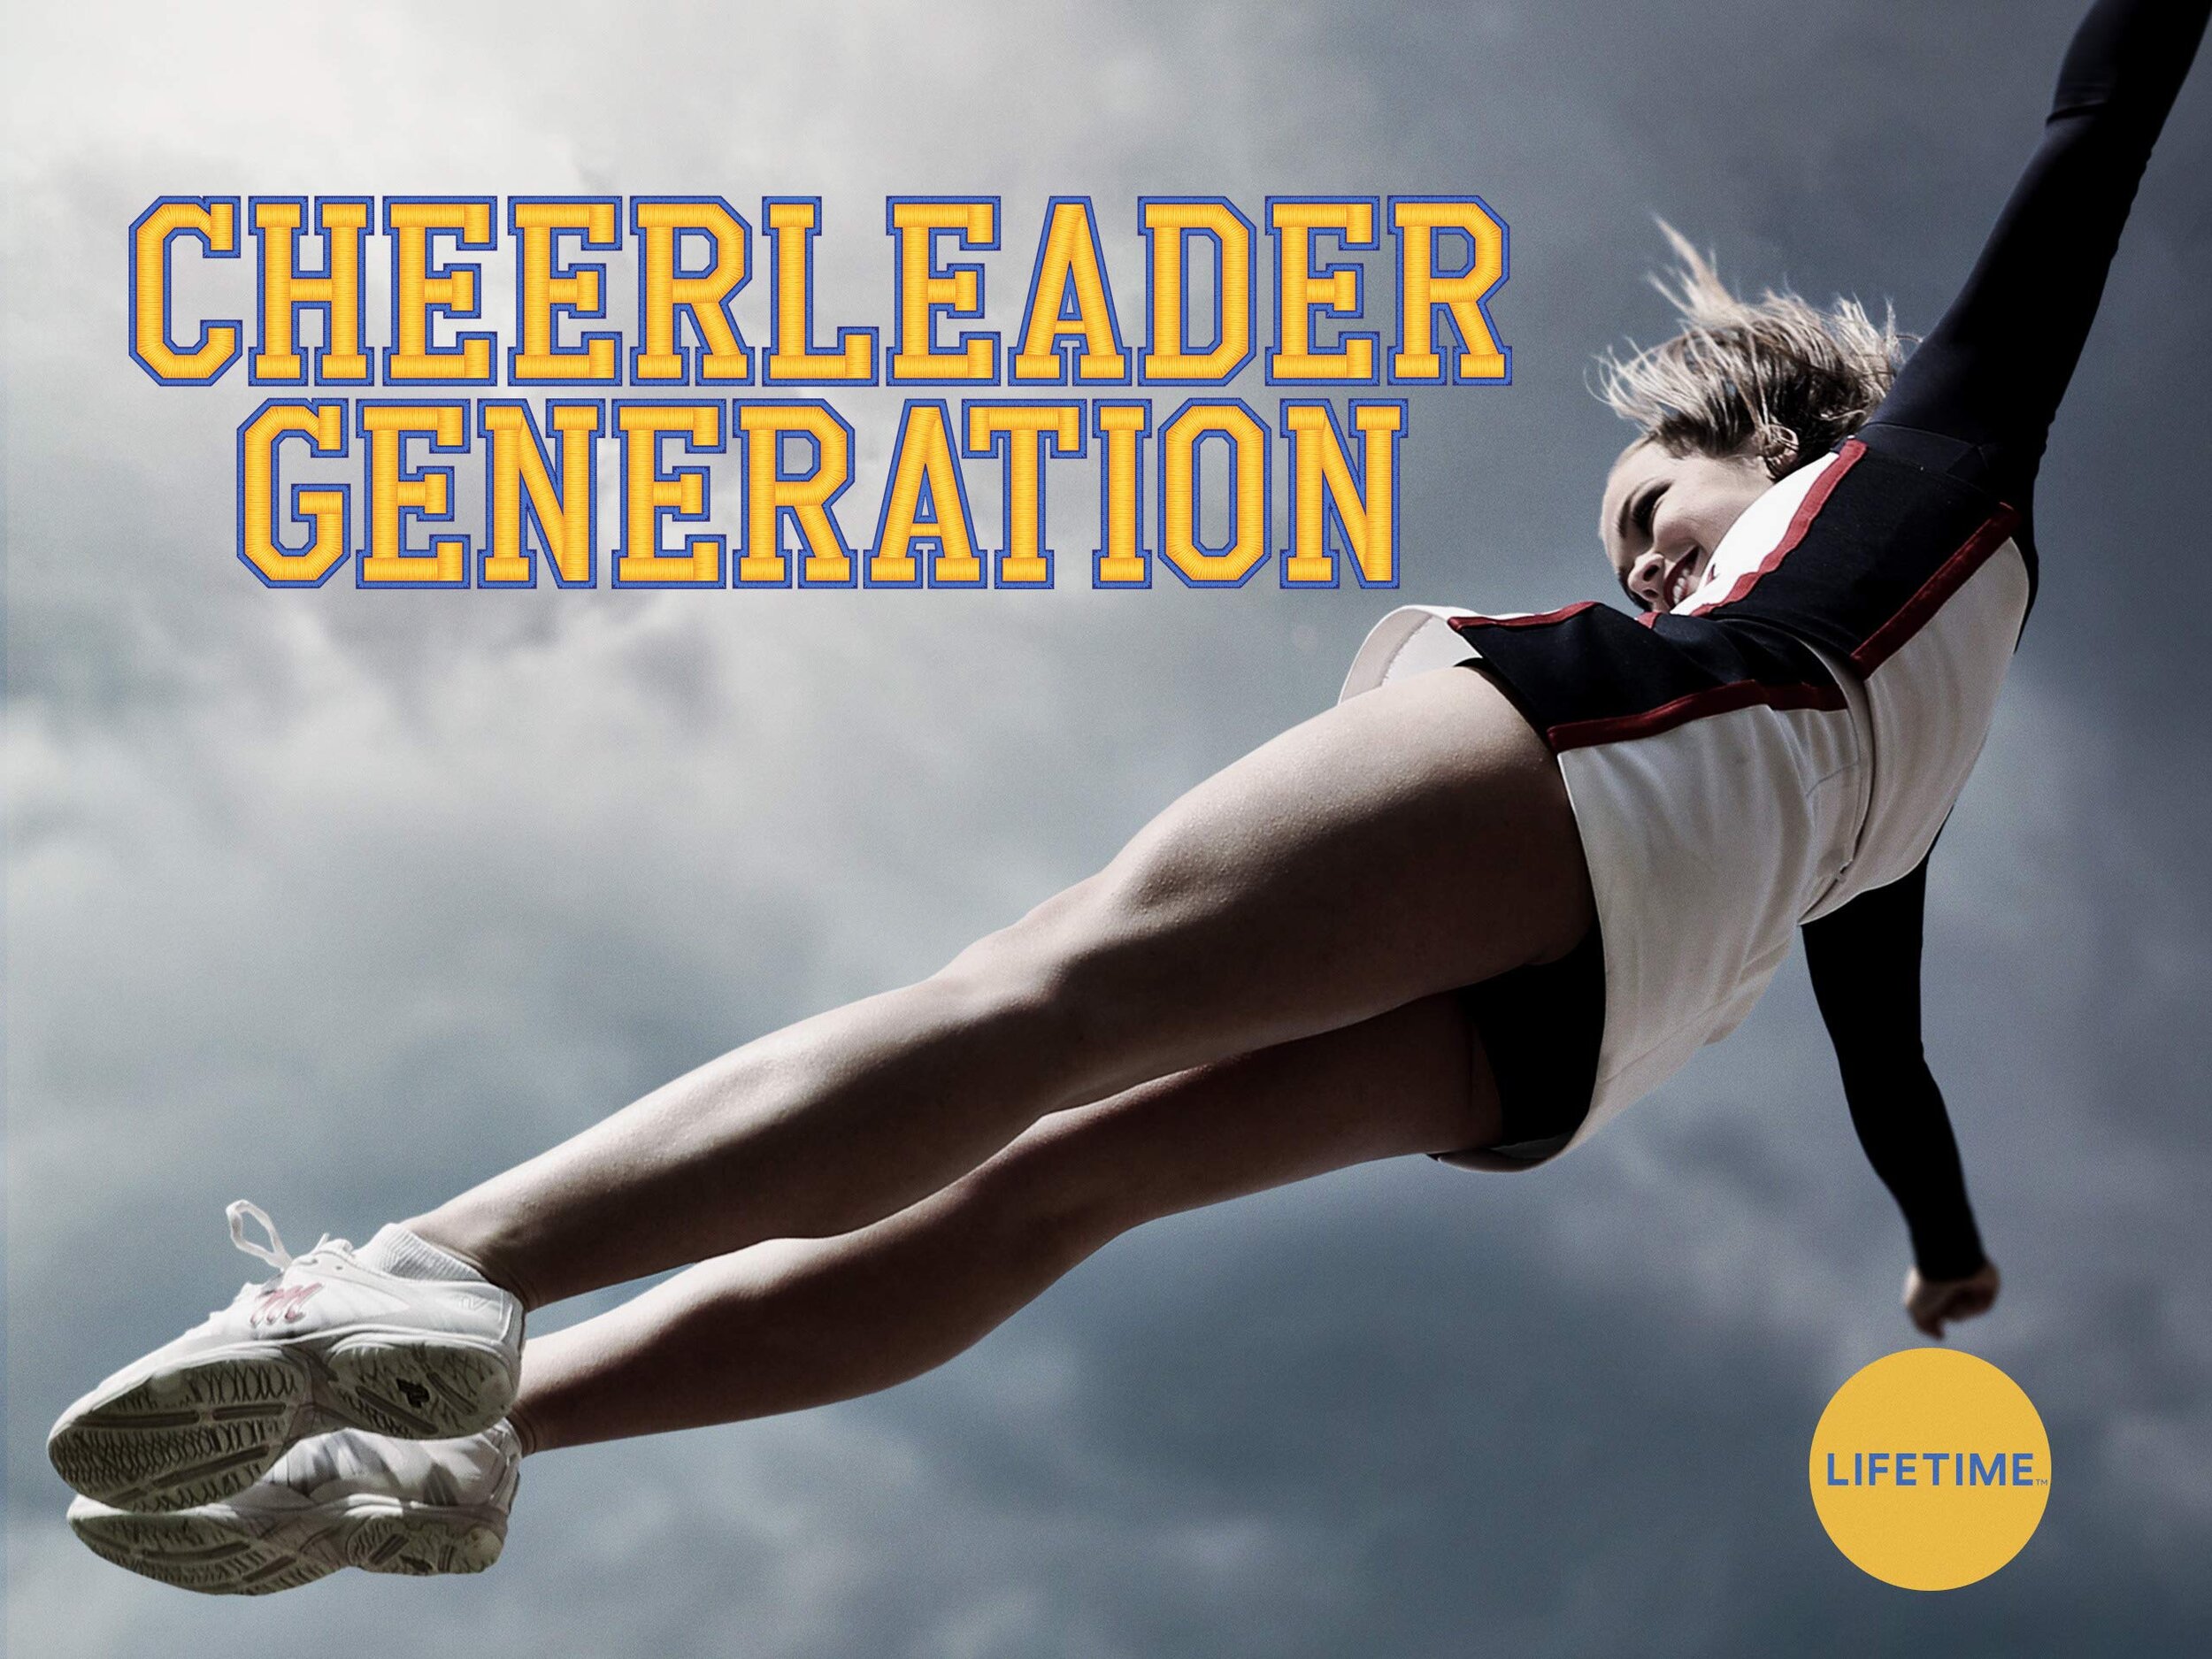 Cheerleader Generation.jpg